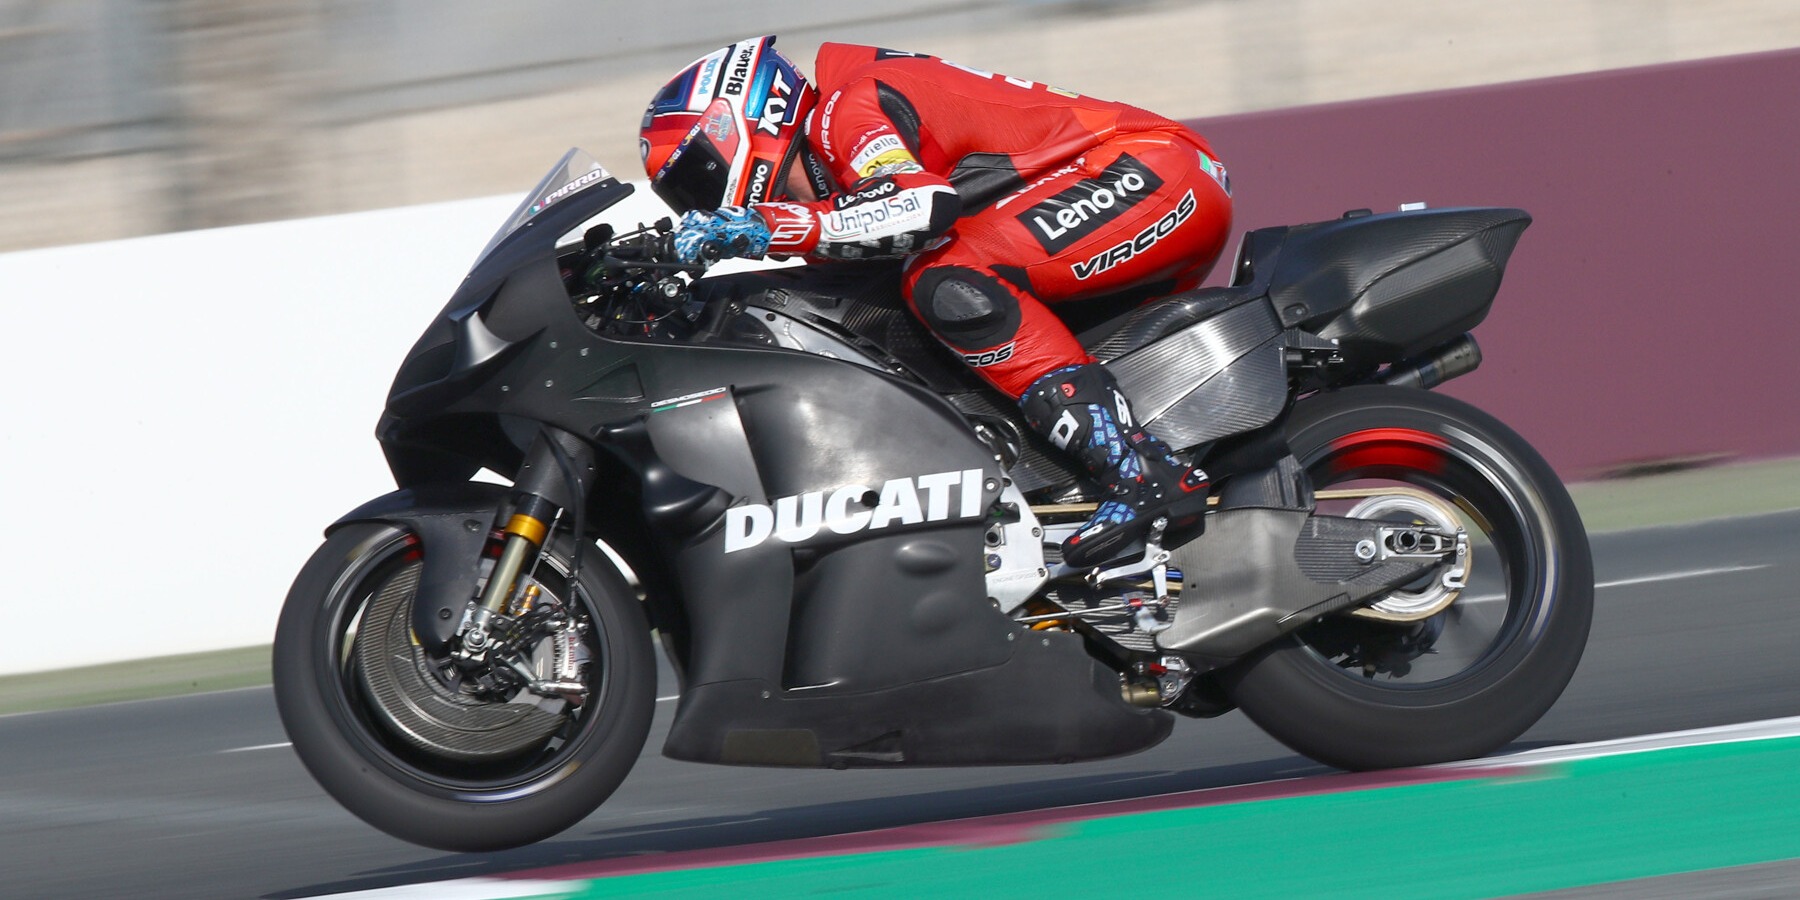 Ducati-Testfahrer Pirro: "Diese MotoGP-Bikes könnten über 400 km/h fahren"